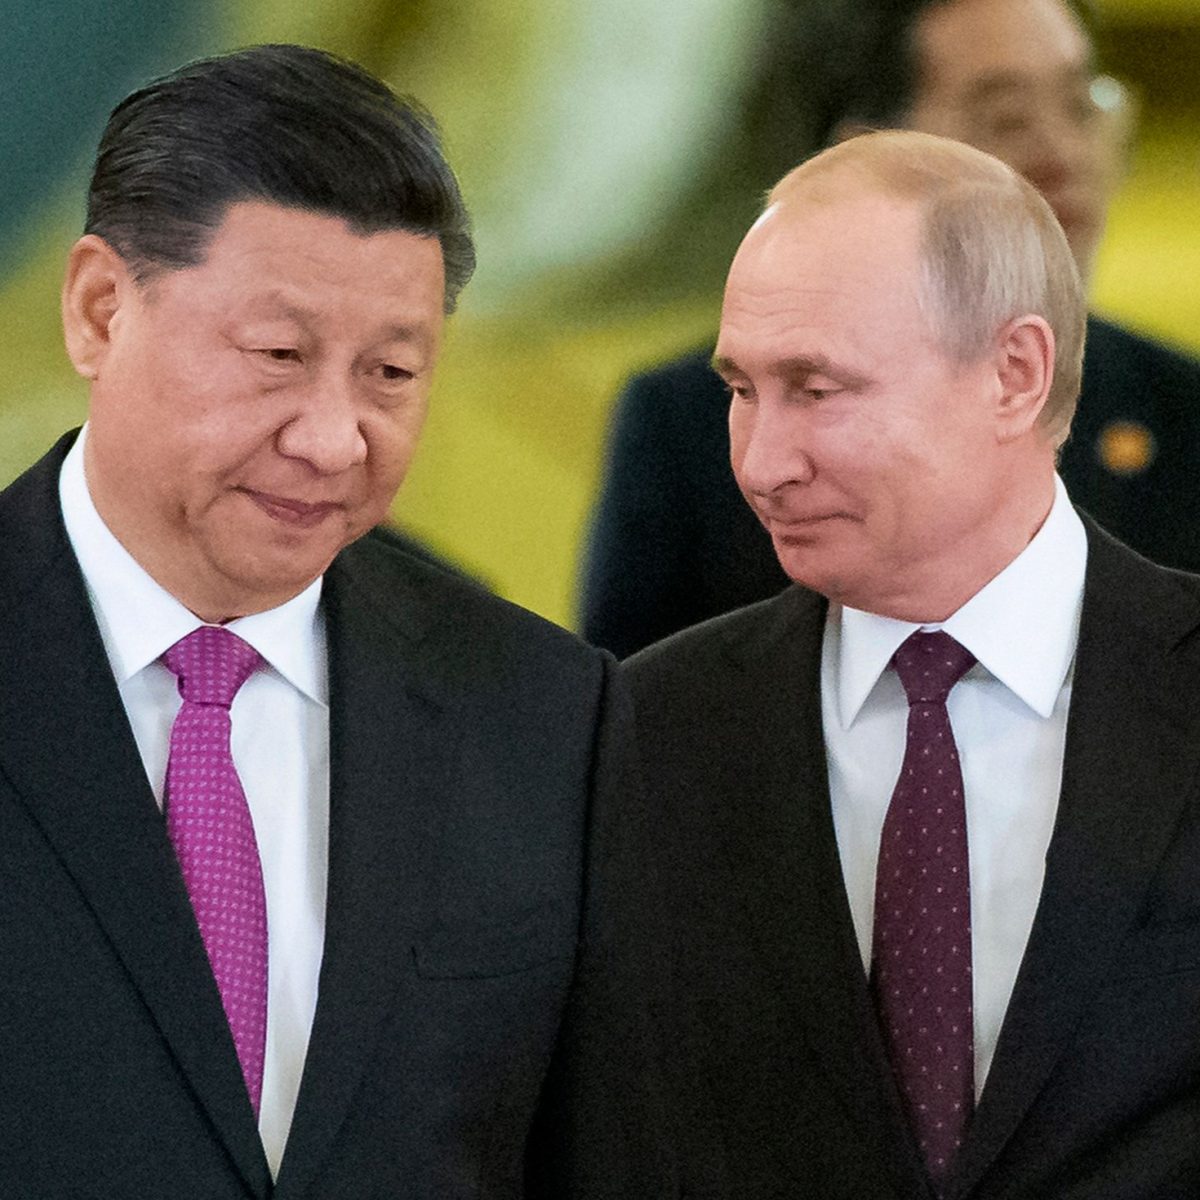 Xi le transmitió a Putin que “la mayoría de países apoya aliviar tensiones” en Ucrania